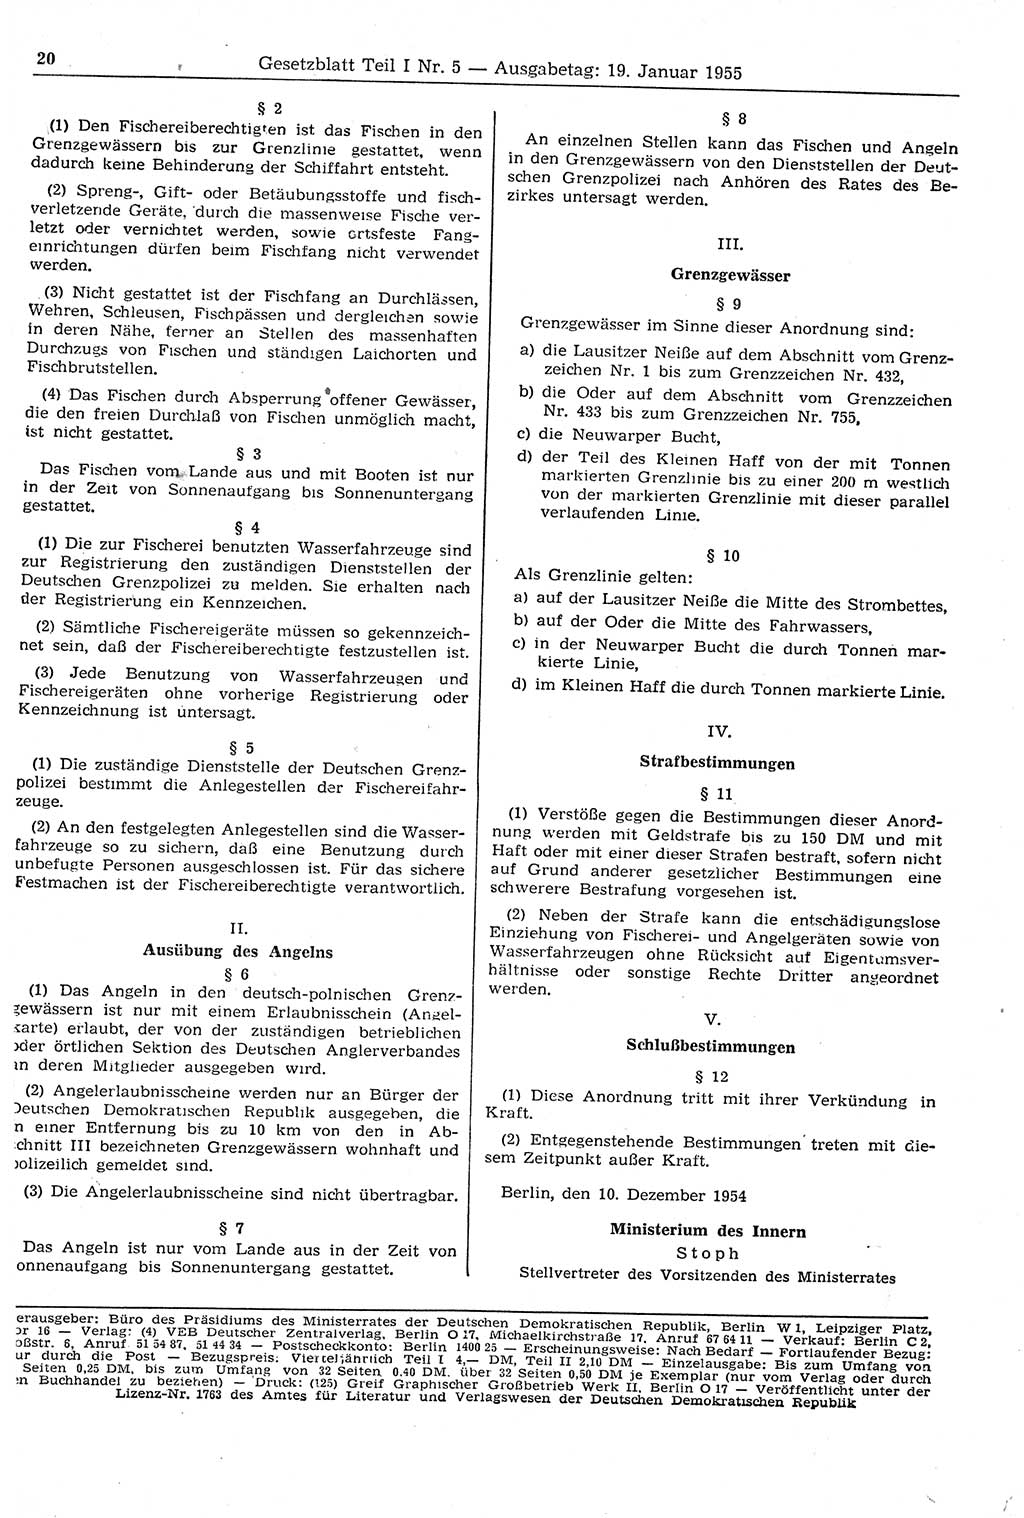 Gesetzblatt (GBl.) der Deutschen Demokratischen Republik (DDR) Teil Ⅰ 1955, Seite 20 (GBl. DDR Ⅰ 1955, S. 20)